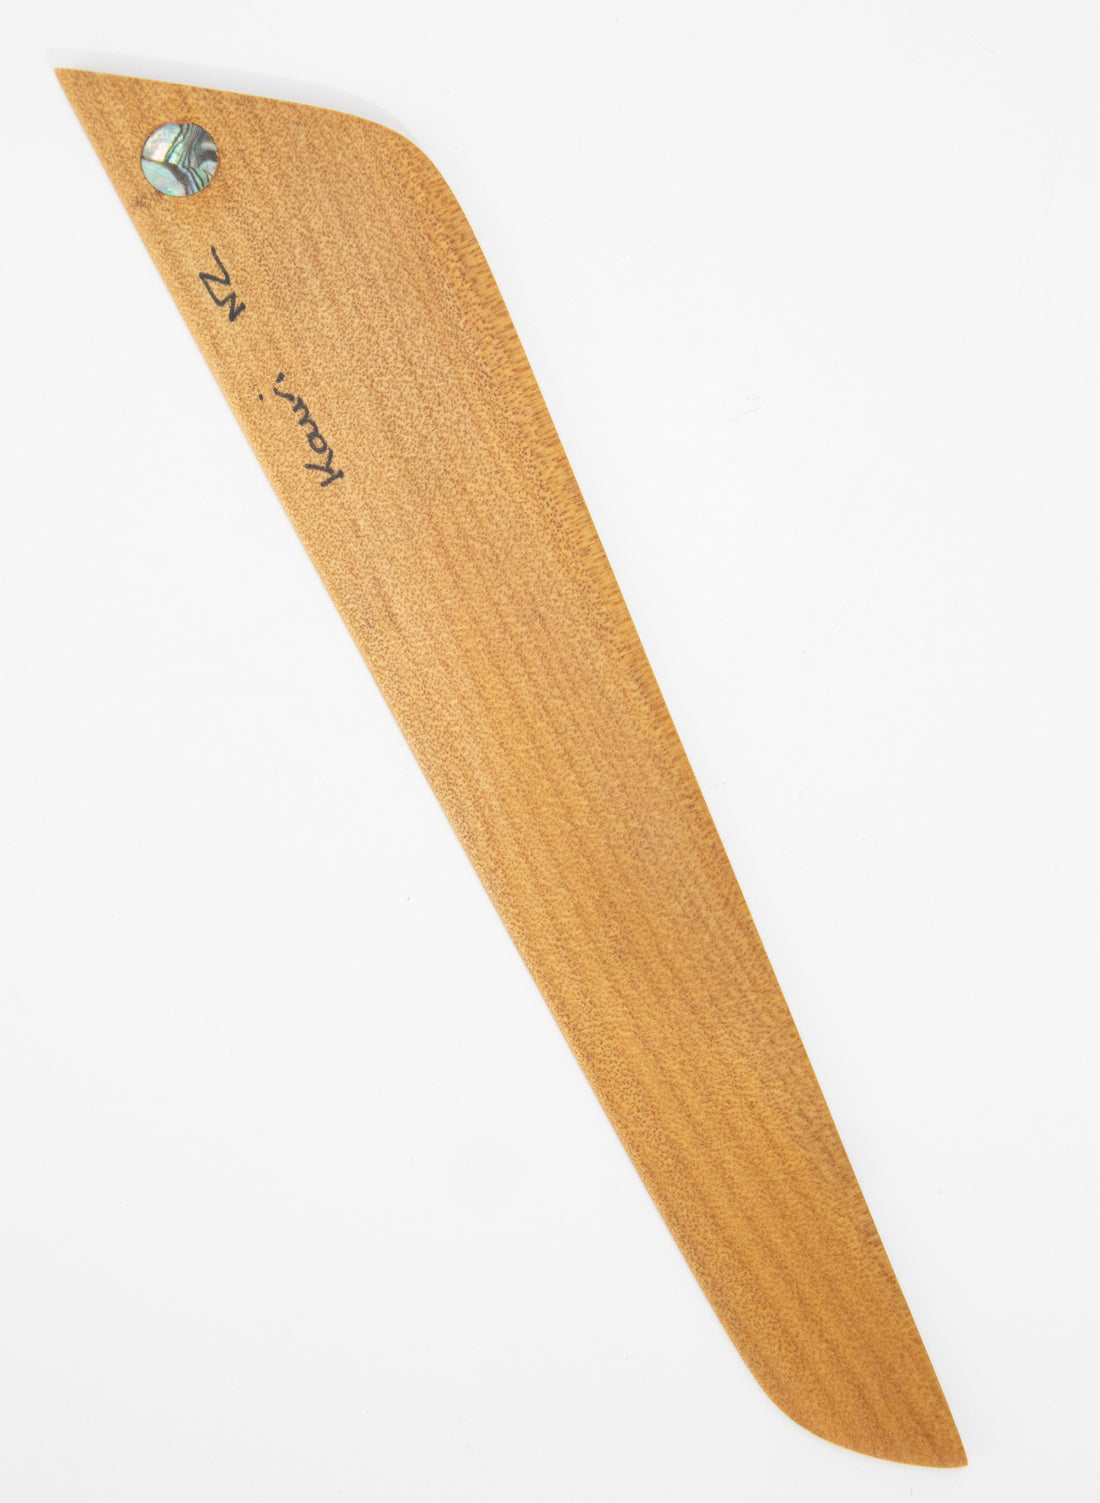 Bookmark - Kauri, Rimu or Rewarewa